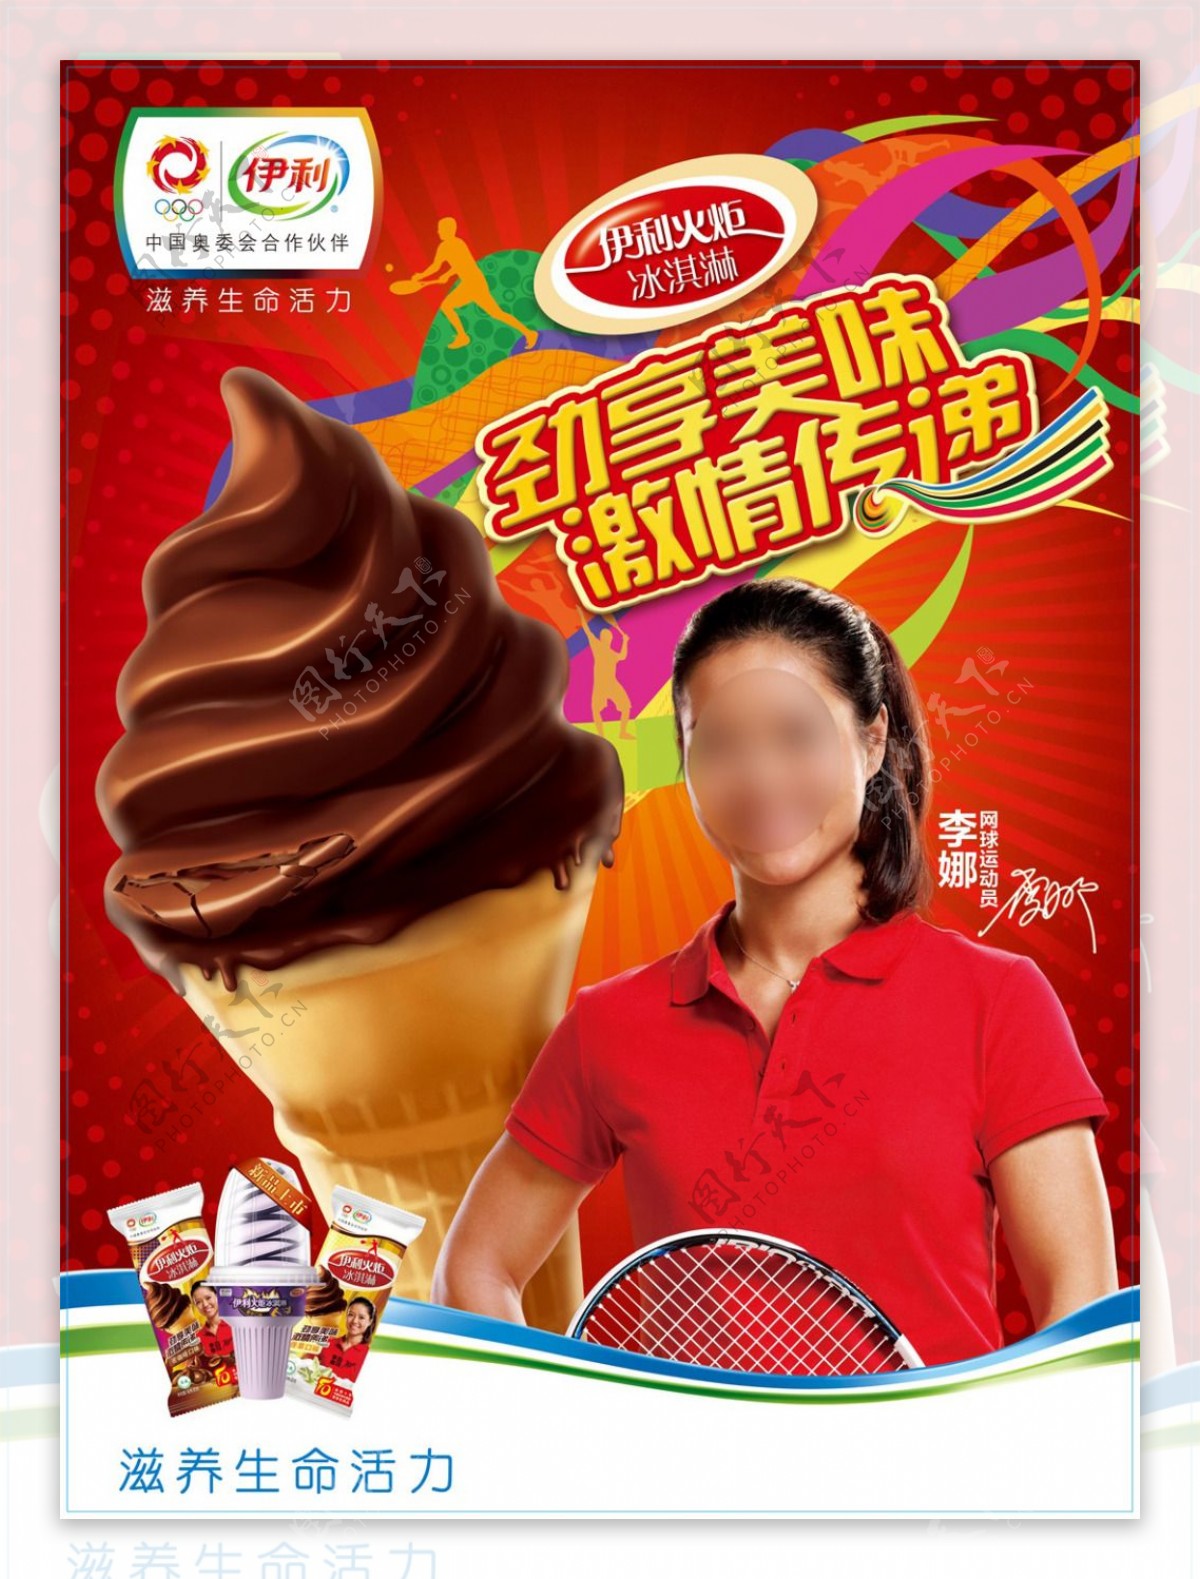 伊利冰淇淋广告冰淇淋